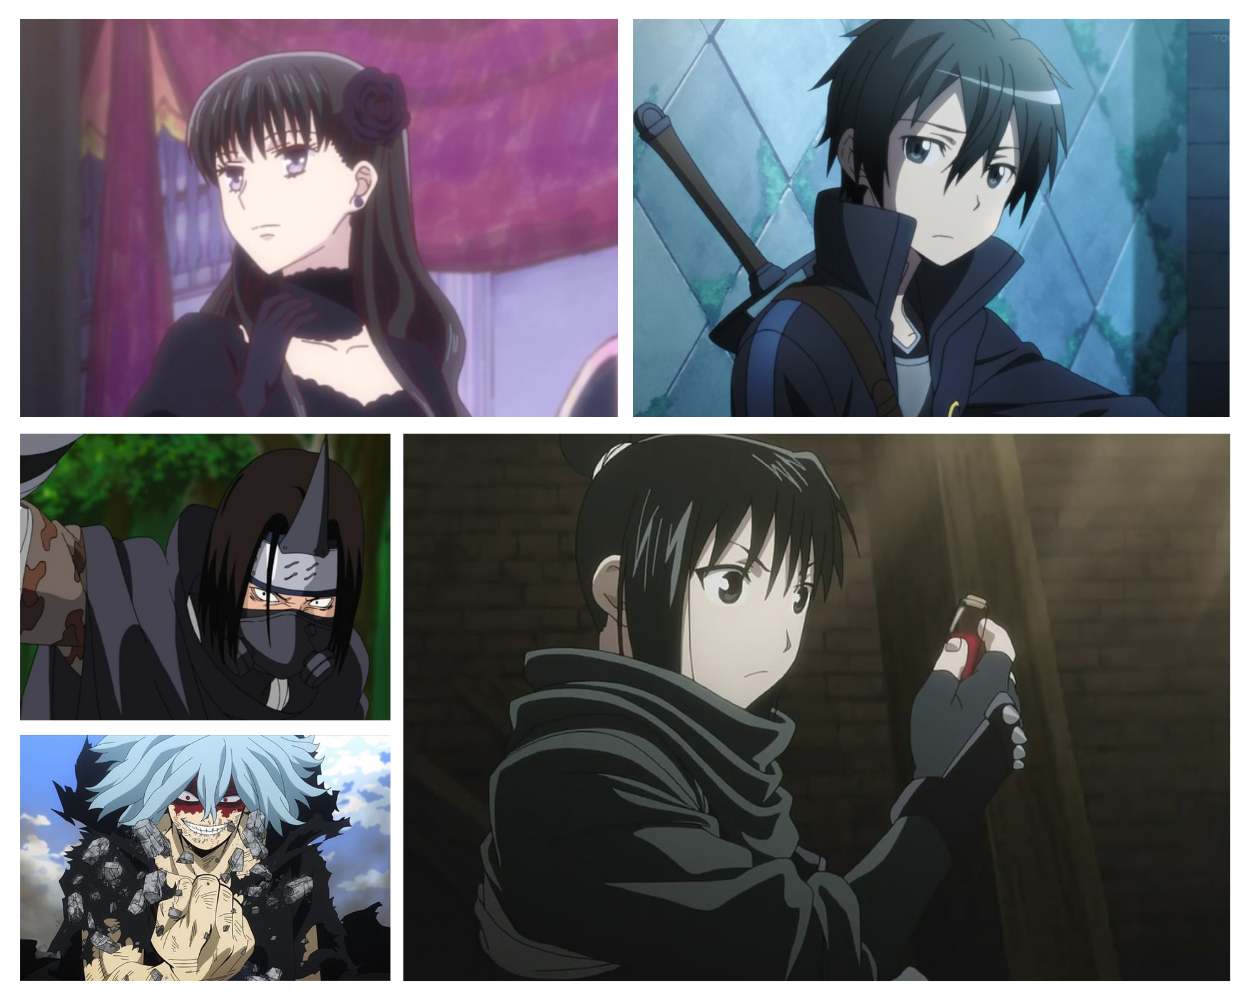 HD wallpaper: anime girl, gothic, black dress, sword, moon, fantasy world |  Wallpaper Flare